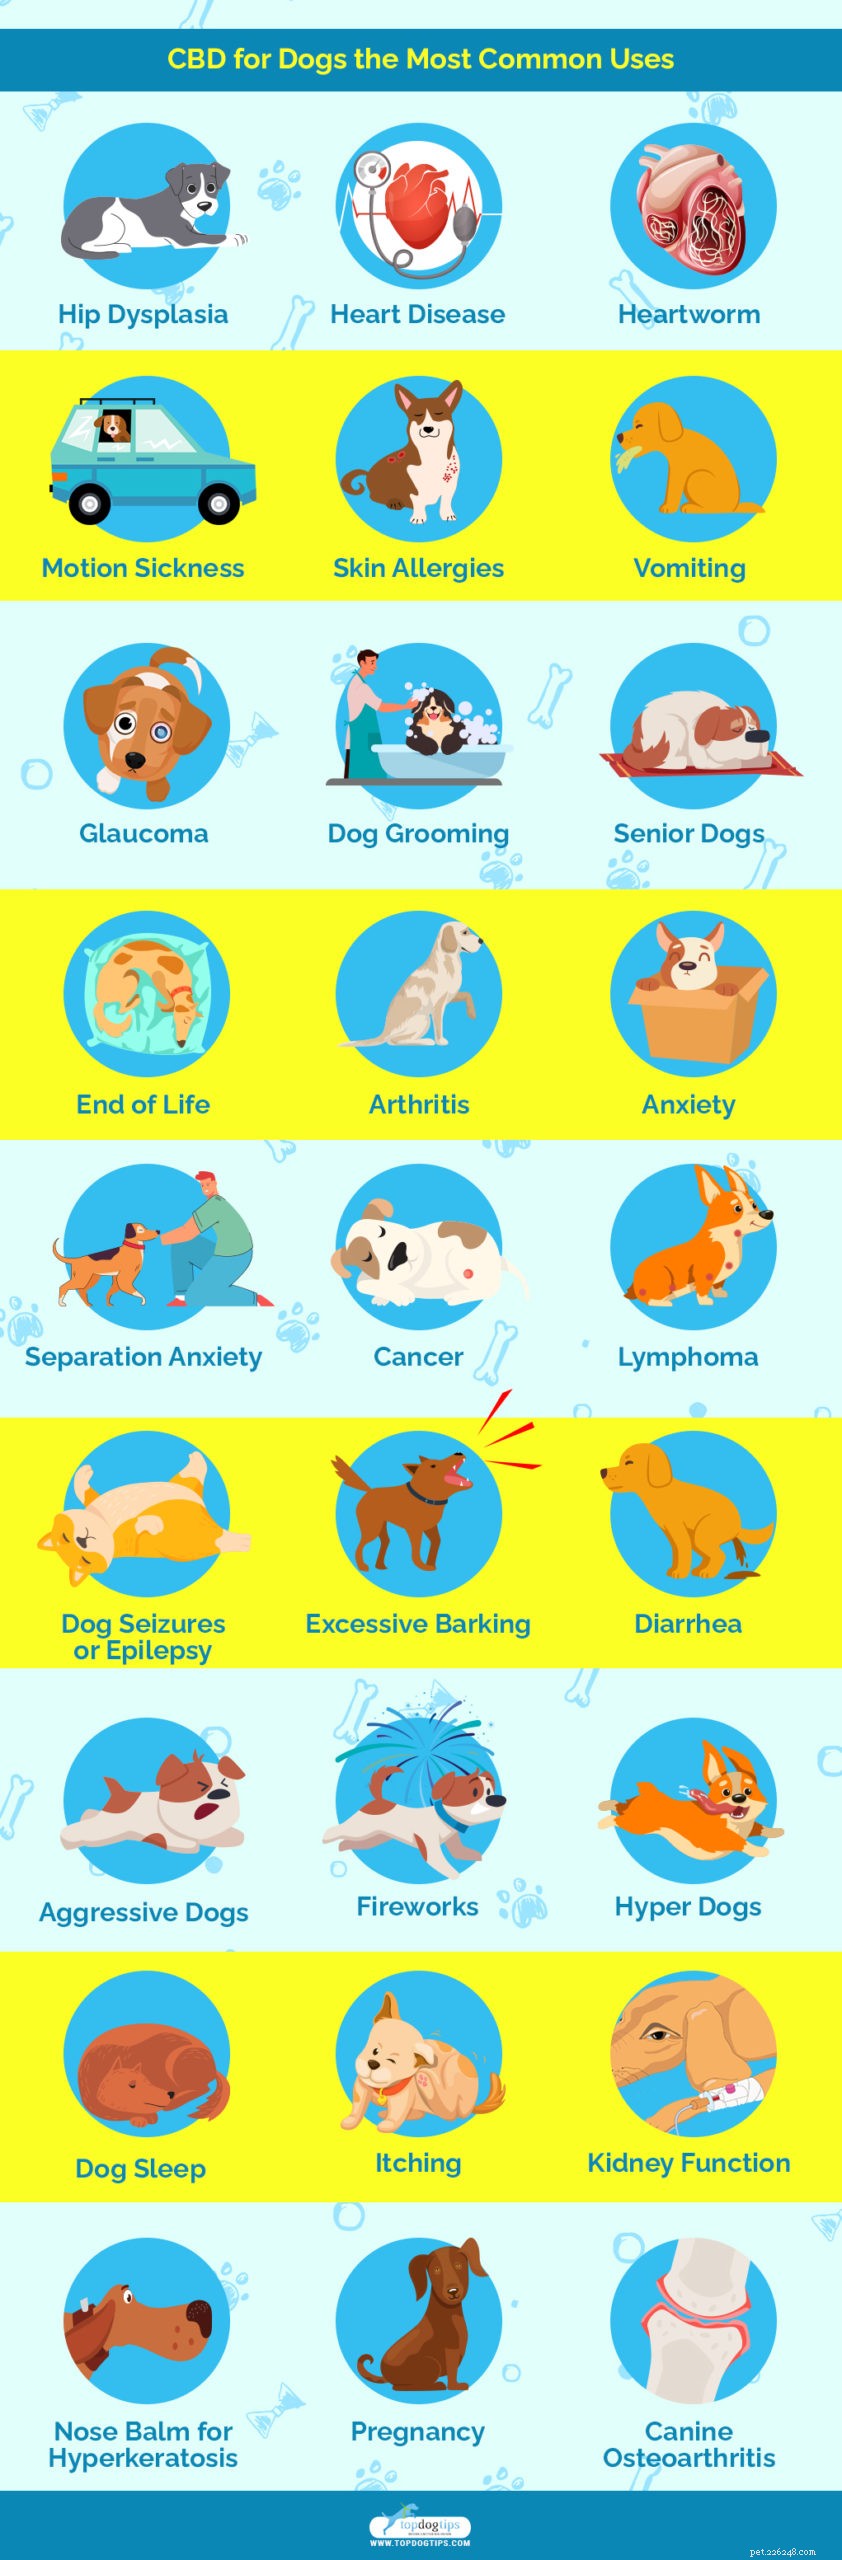 25 hälsofördelar och användningar av CBD för hundar